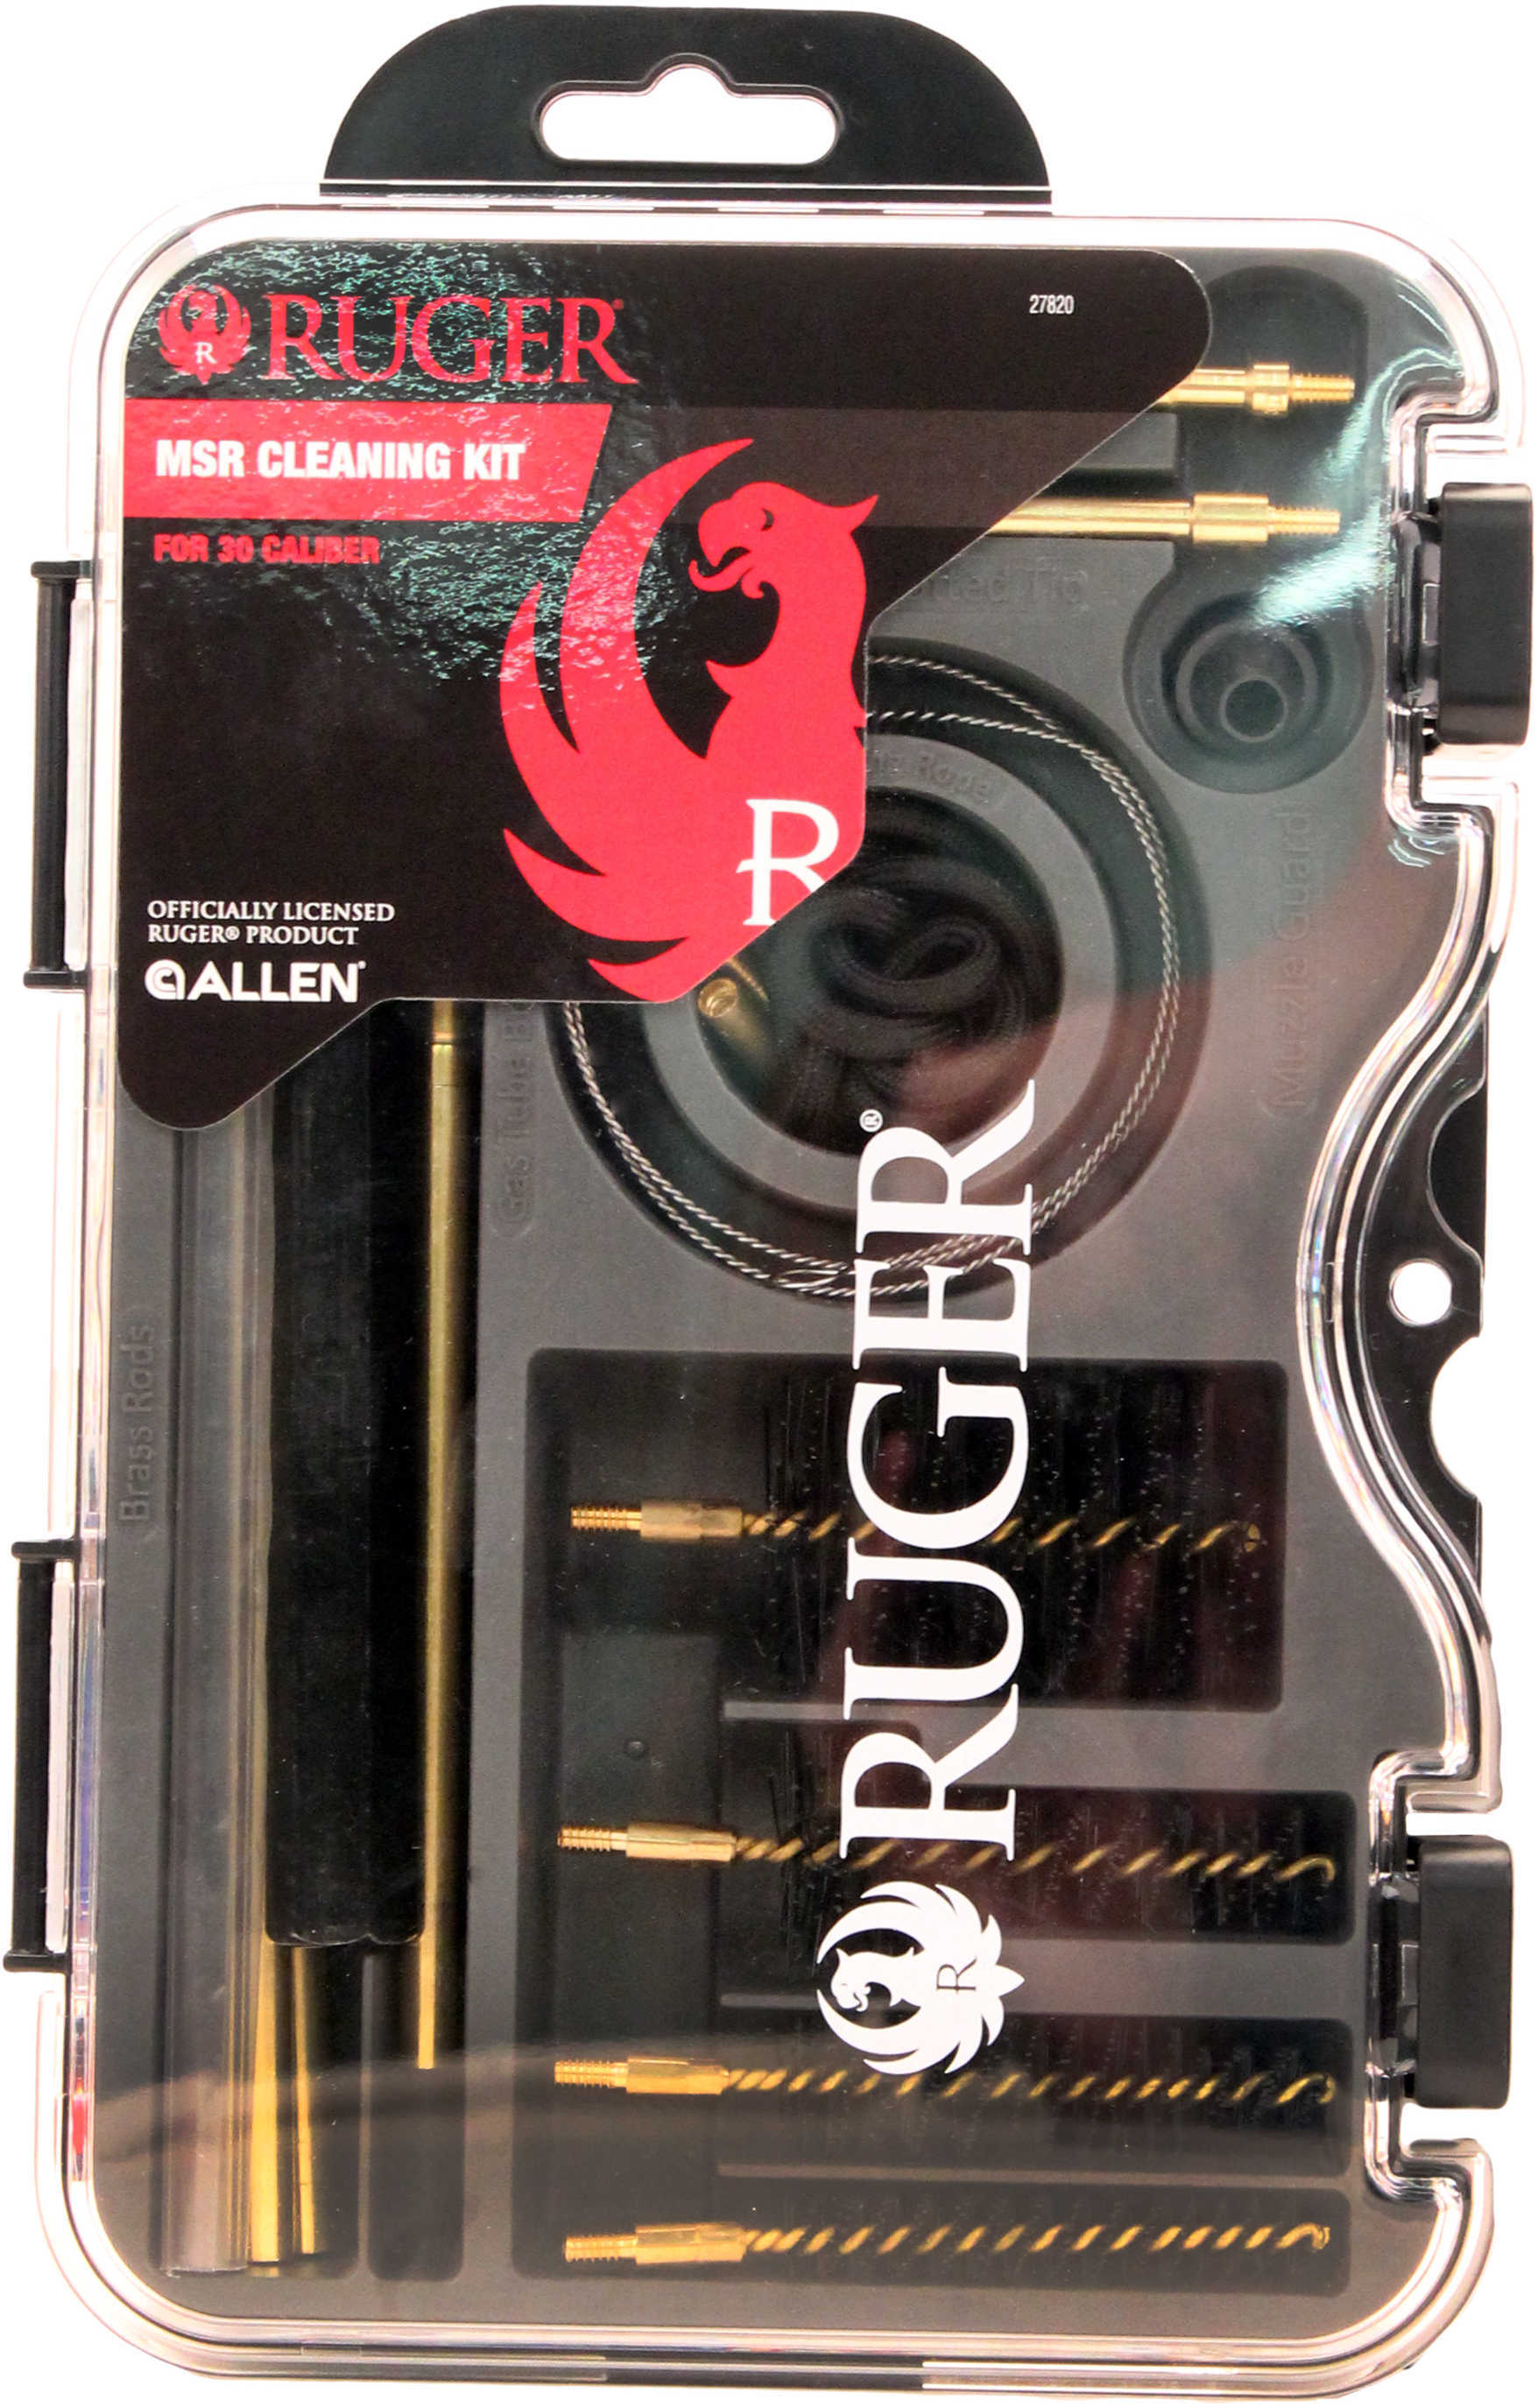 Allen Cases Ruger Cleaning Kit MSR, .30 Caliber Md: 27820